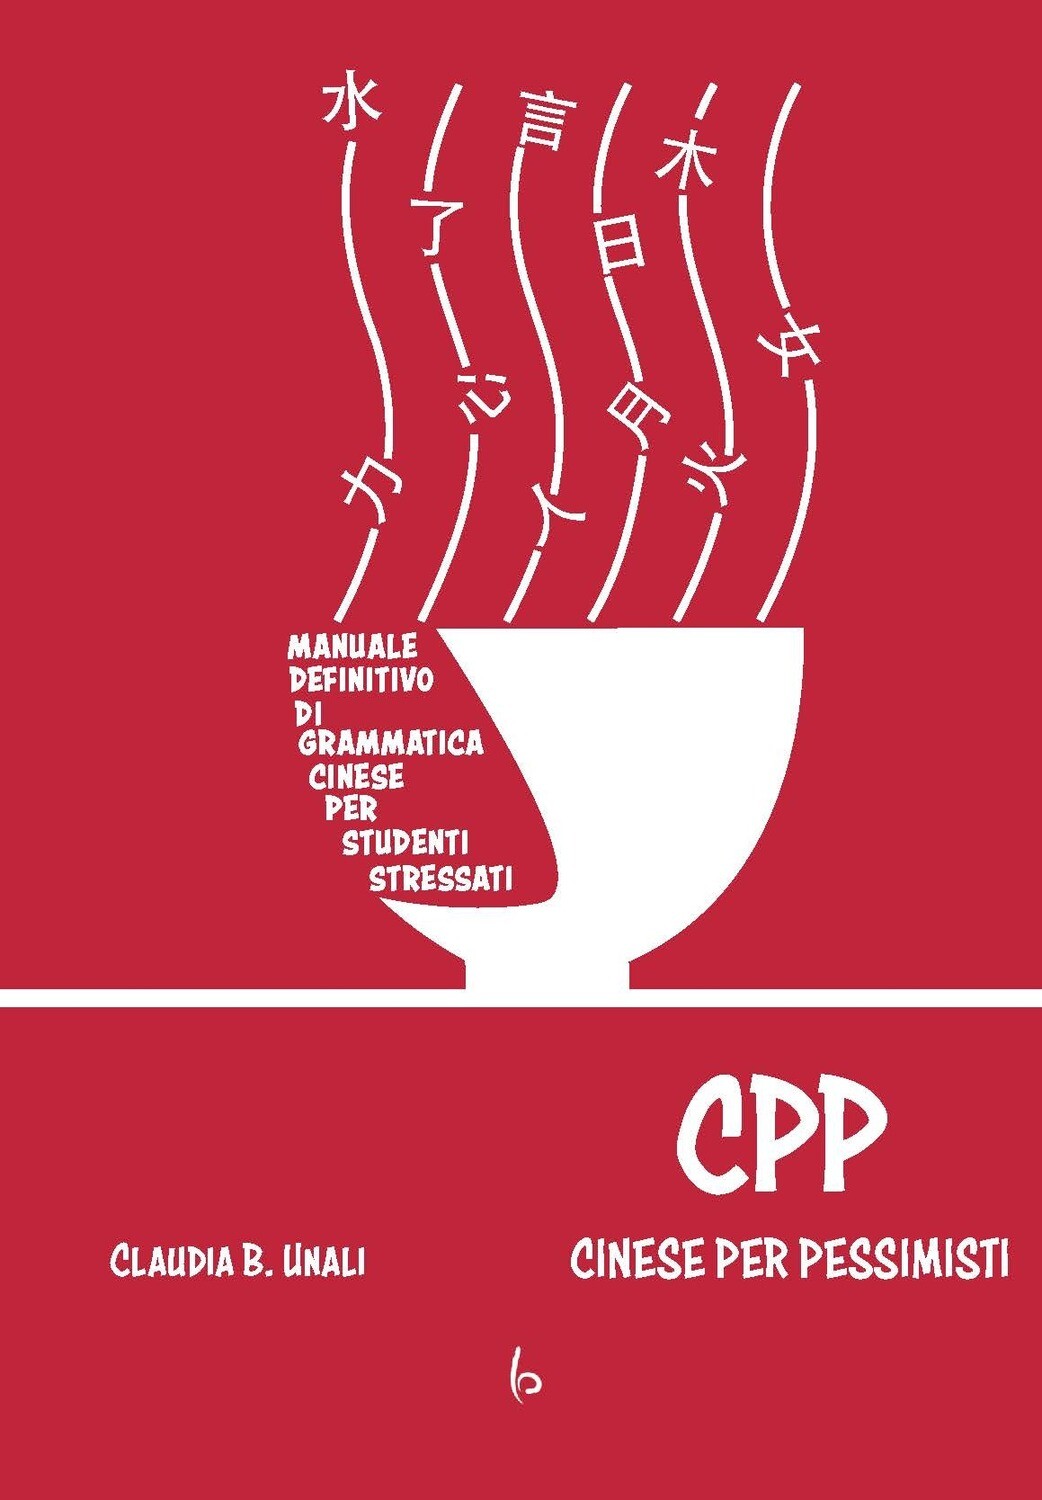 CPP - Cinese Per Pessimisti